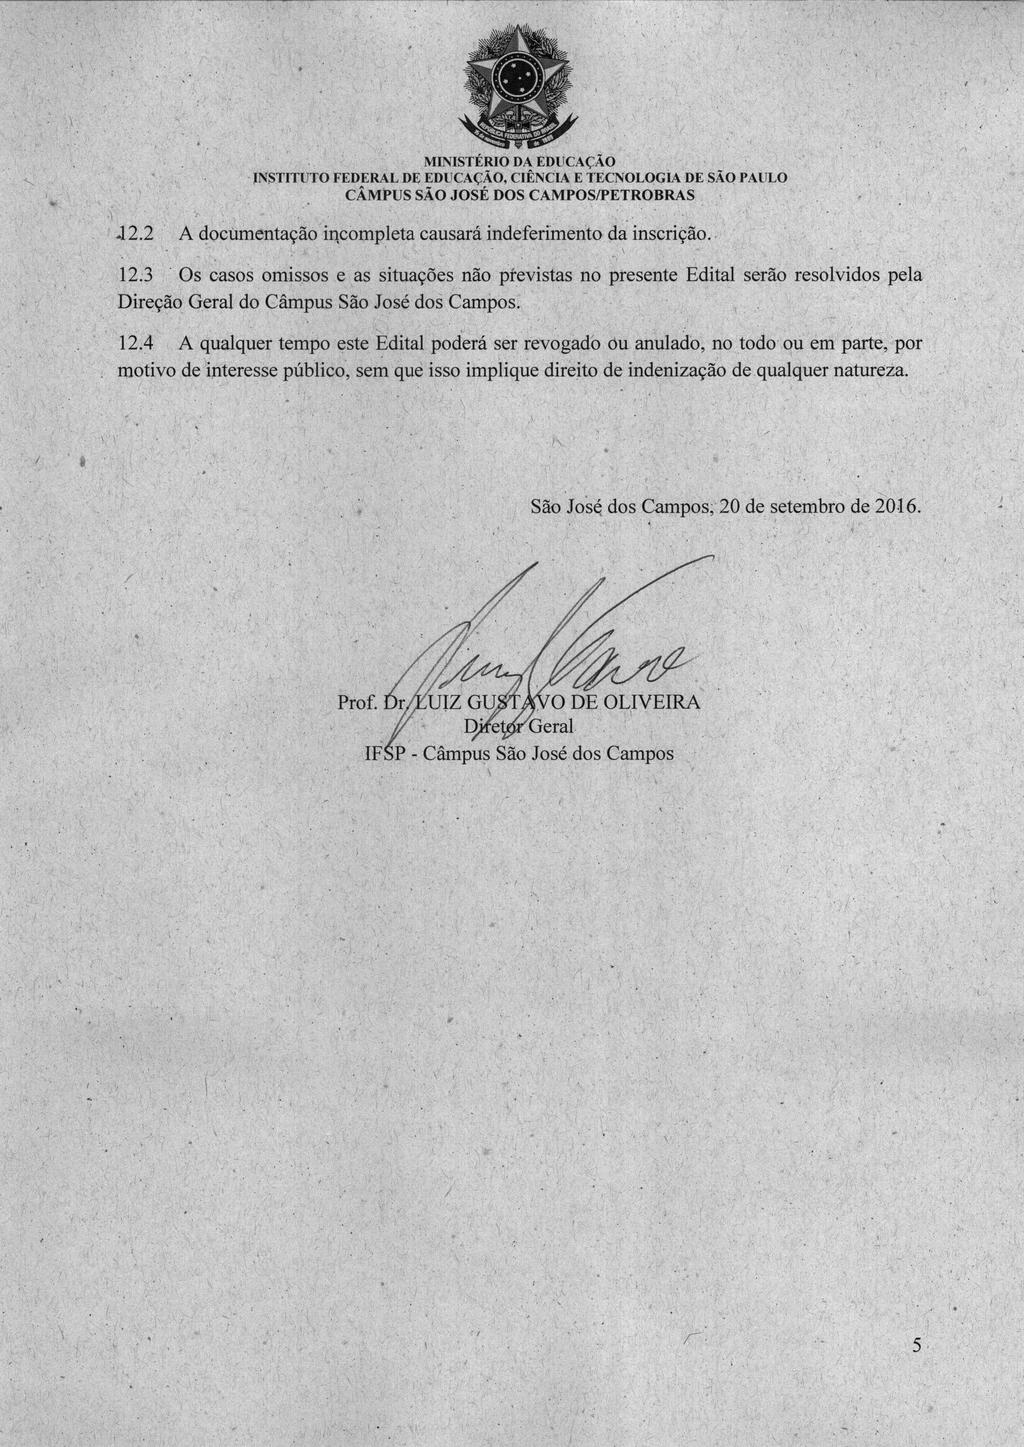 INSTITUTO FEDERAL DEEDUCAÇÃO, CIÊNCIA E TECNOLOGIA DESÃO PAULO J2.2 A documentação incompleta causará indeferimento da inscrição. 12.